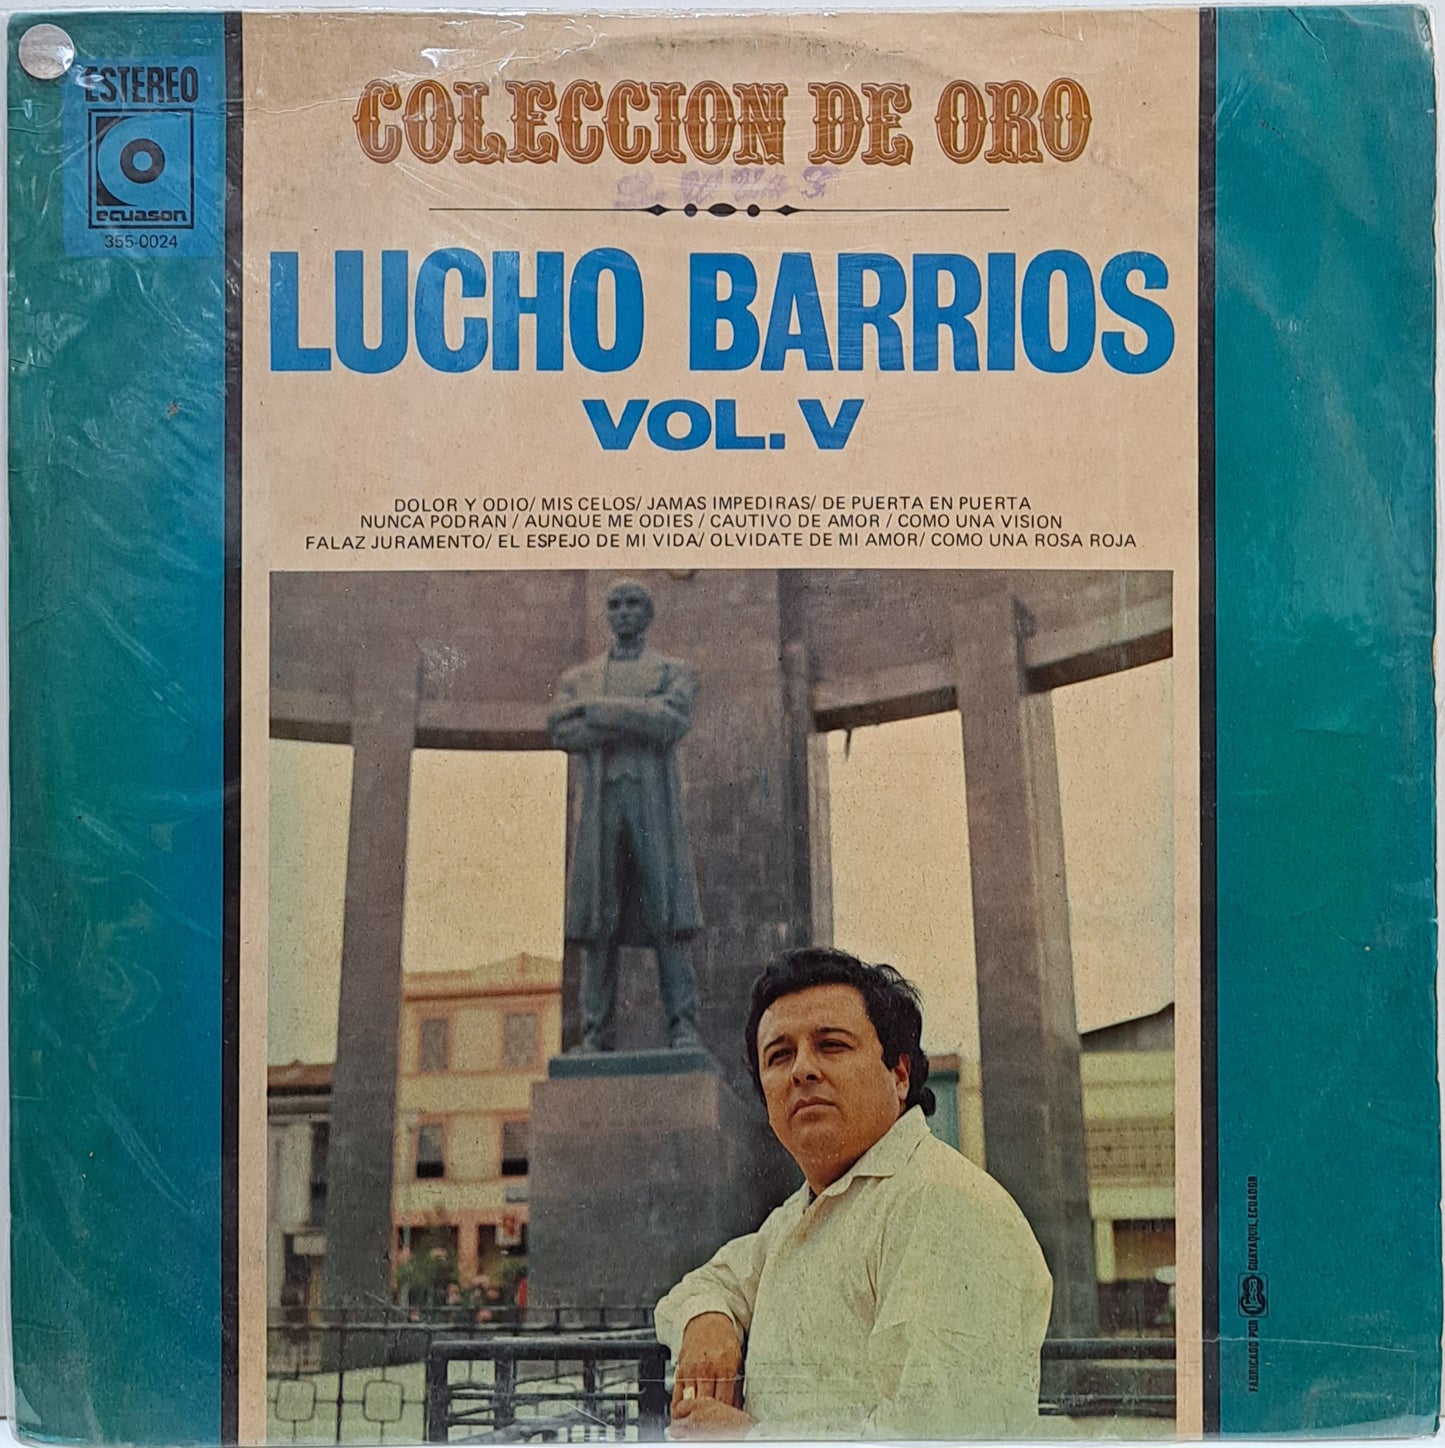 LUCHO BARRIOS - COLECCION DE ORO VOL. V LP